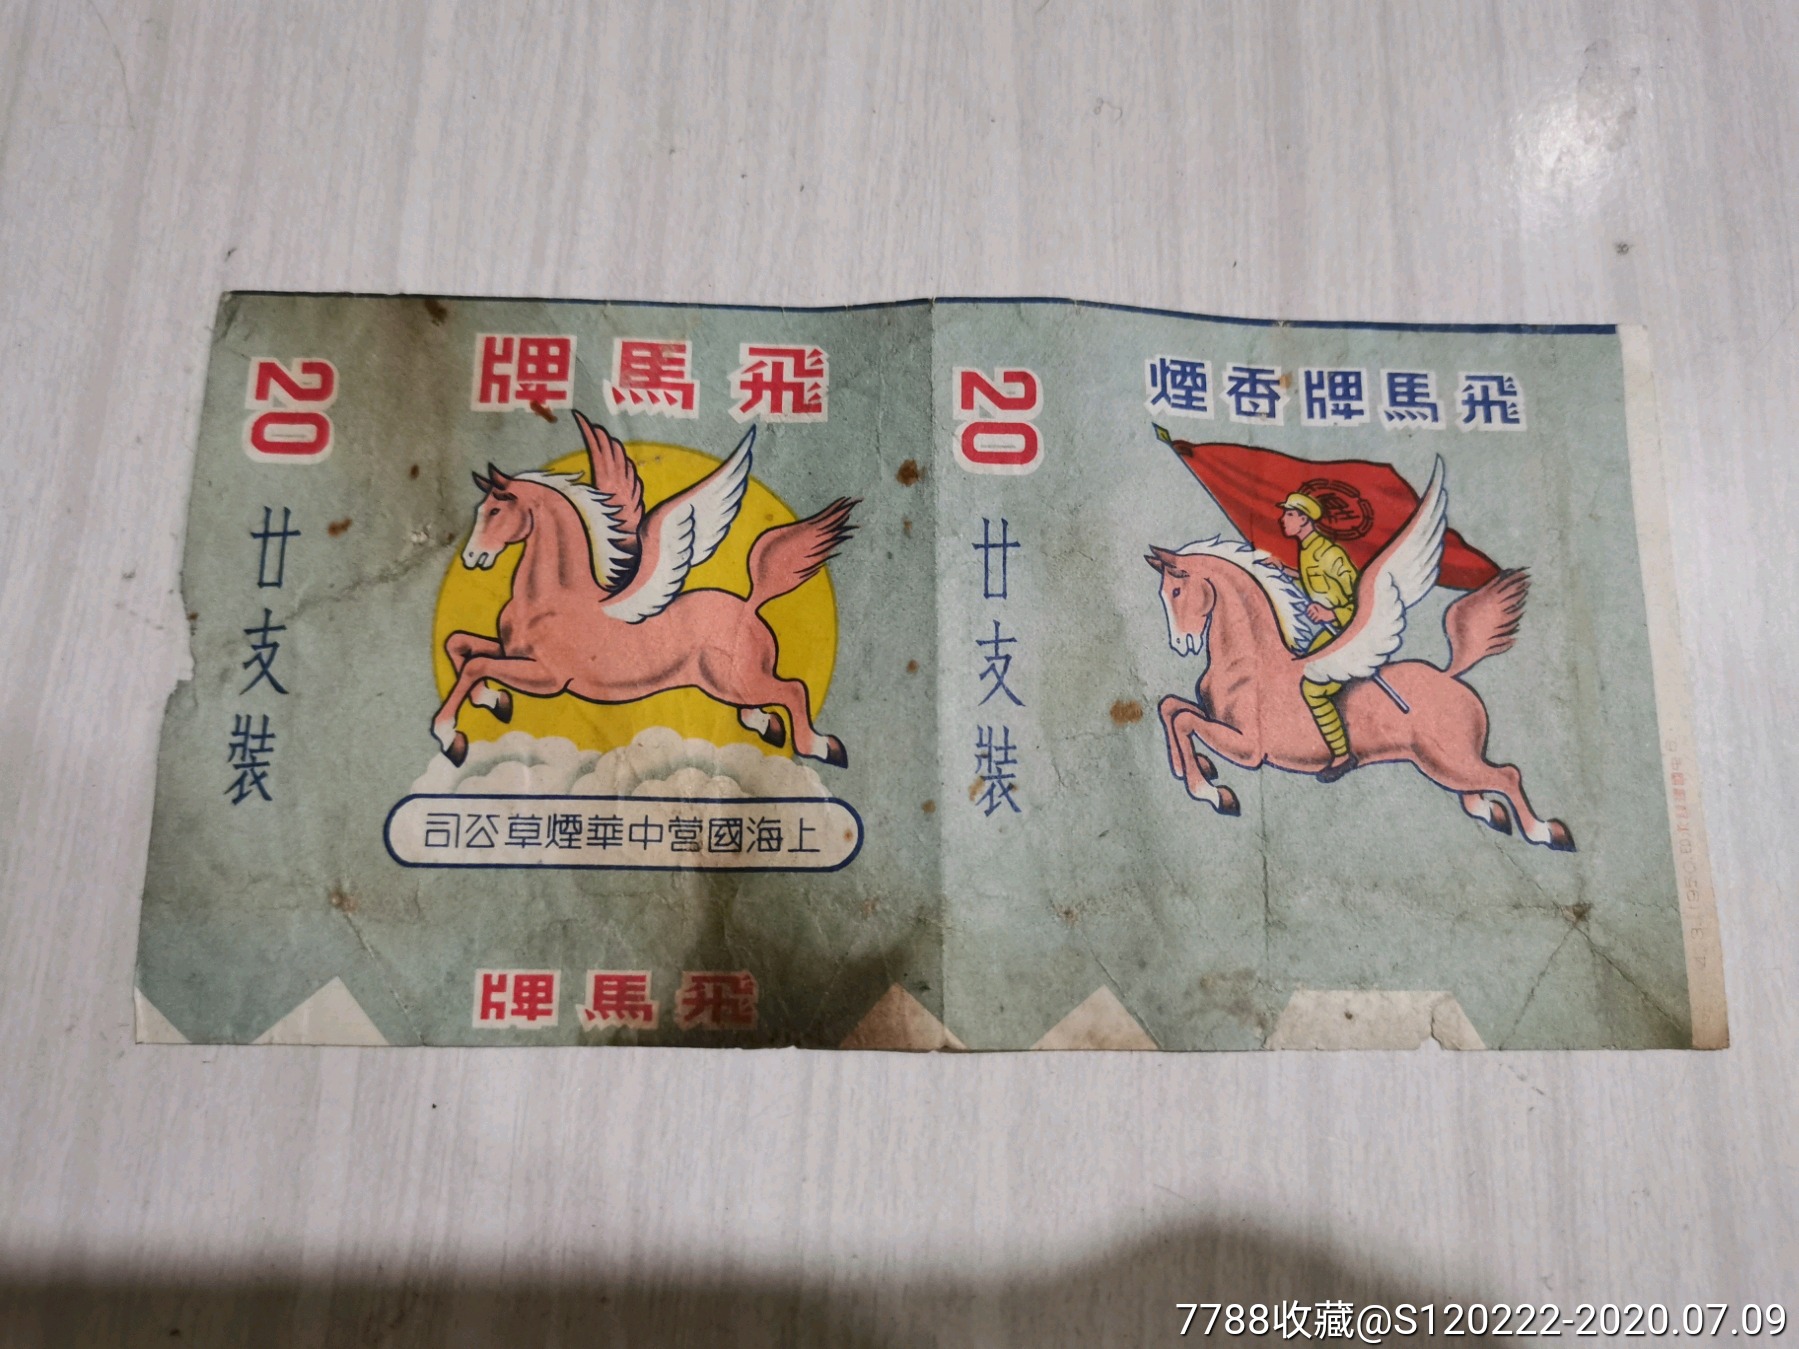 上海国营中华烟草公司,飞马牌香烟烟标.